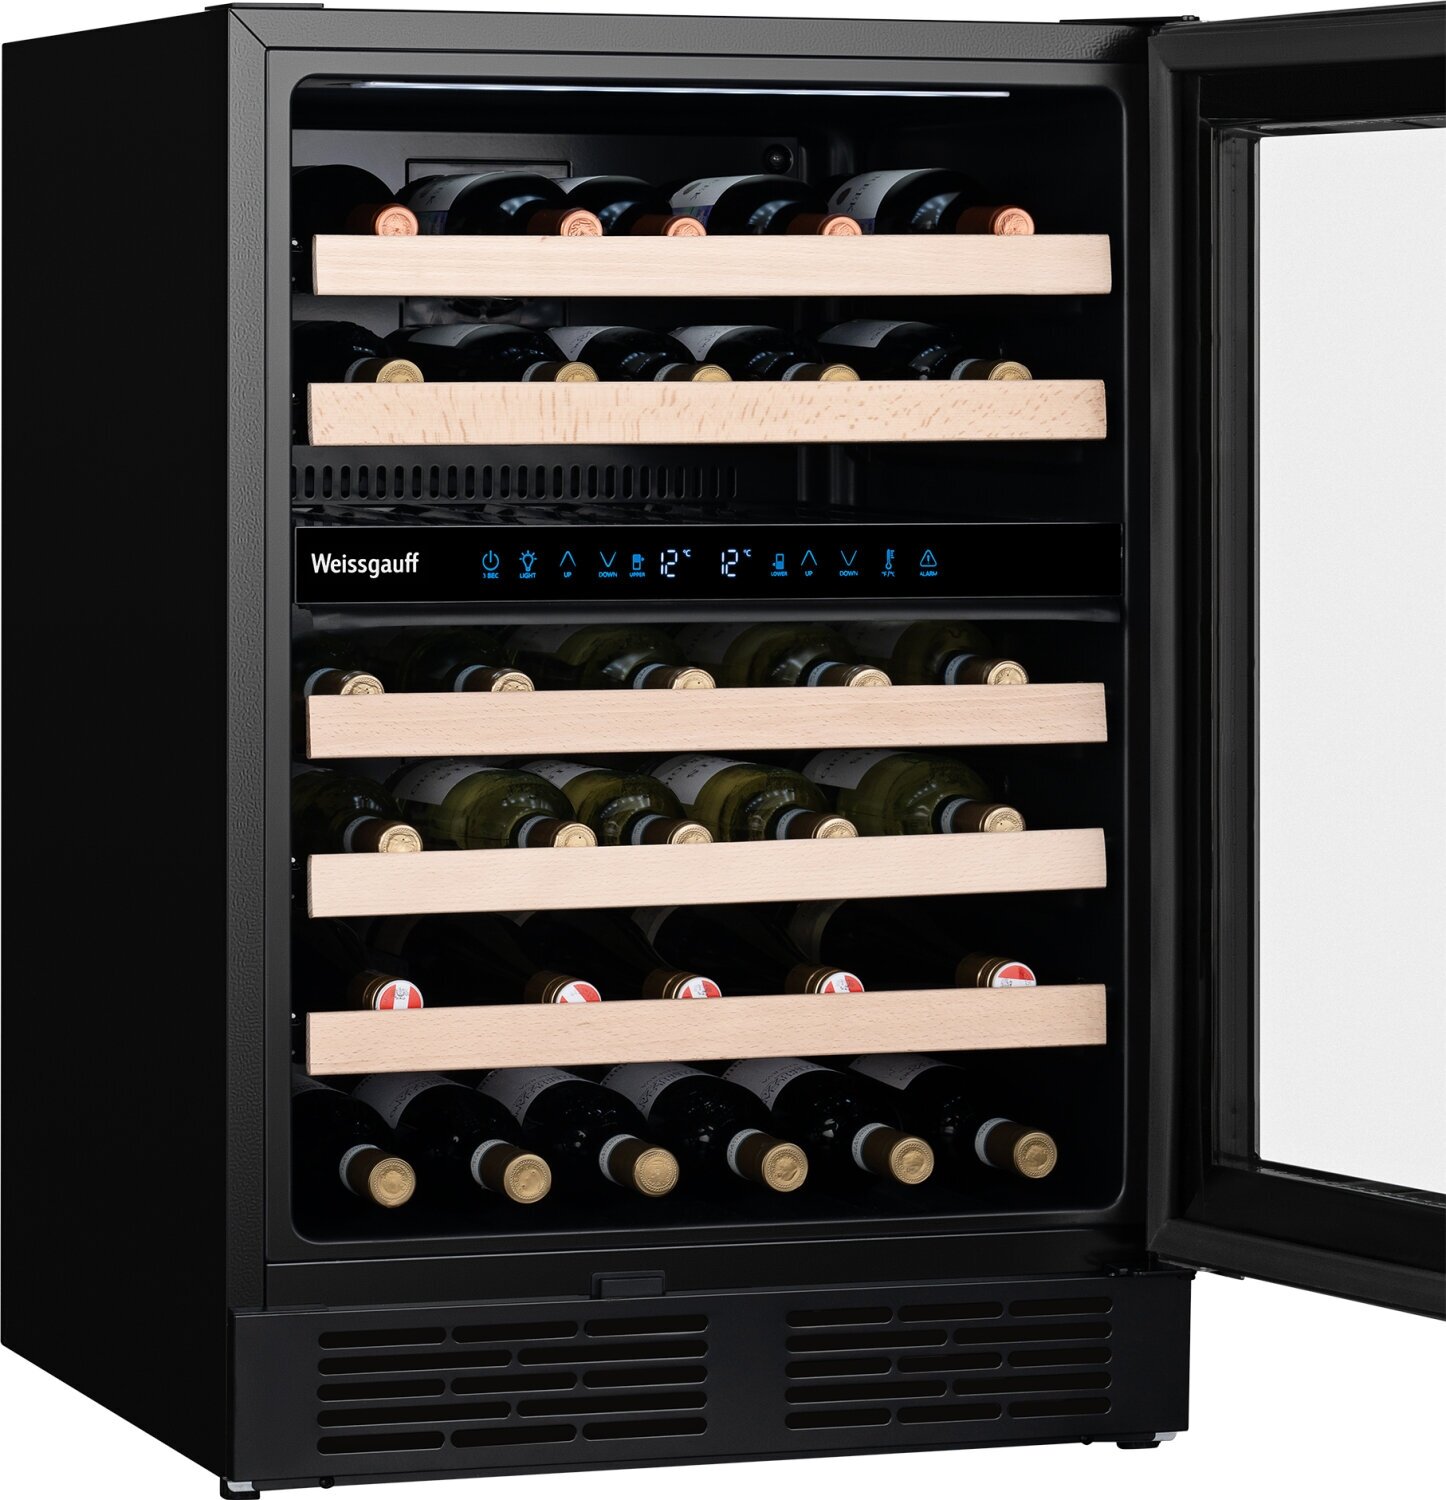 Встраиваемый винный холодильник Weissgauff WWC-46 Bottle Premium NoFrost Dual Zone 3 года гарантии, Полностью электронное управление, Перенавешиваемая дверь, Полки выполненные из дерева